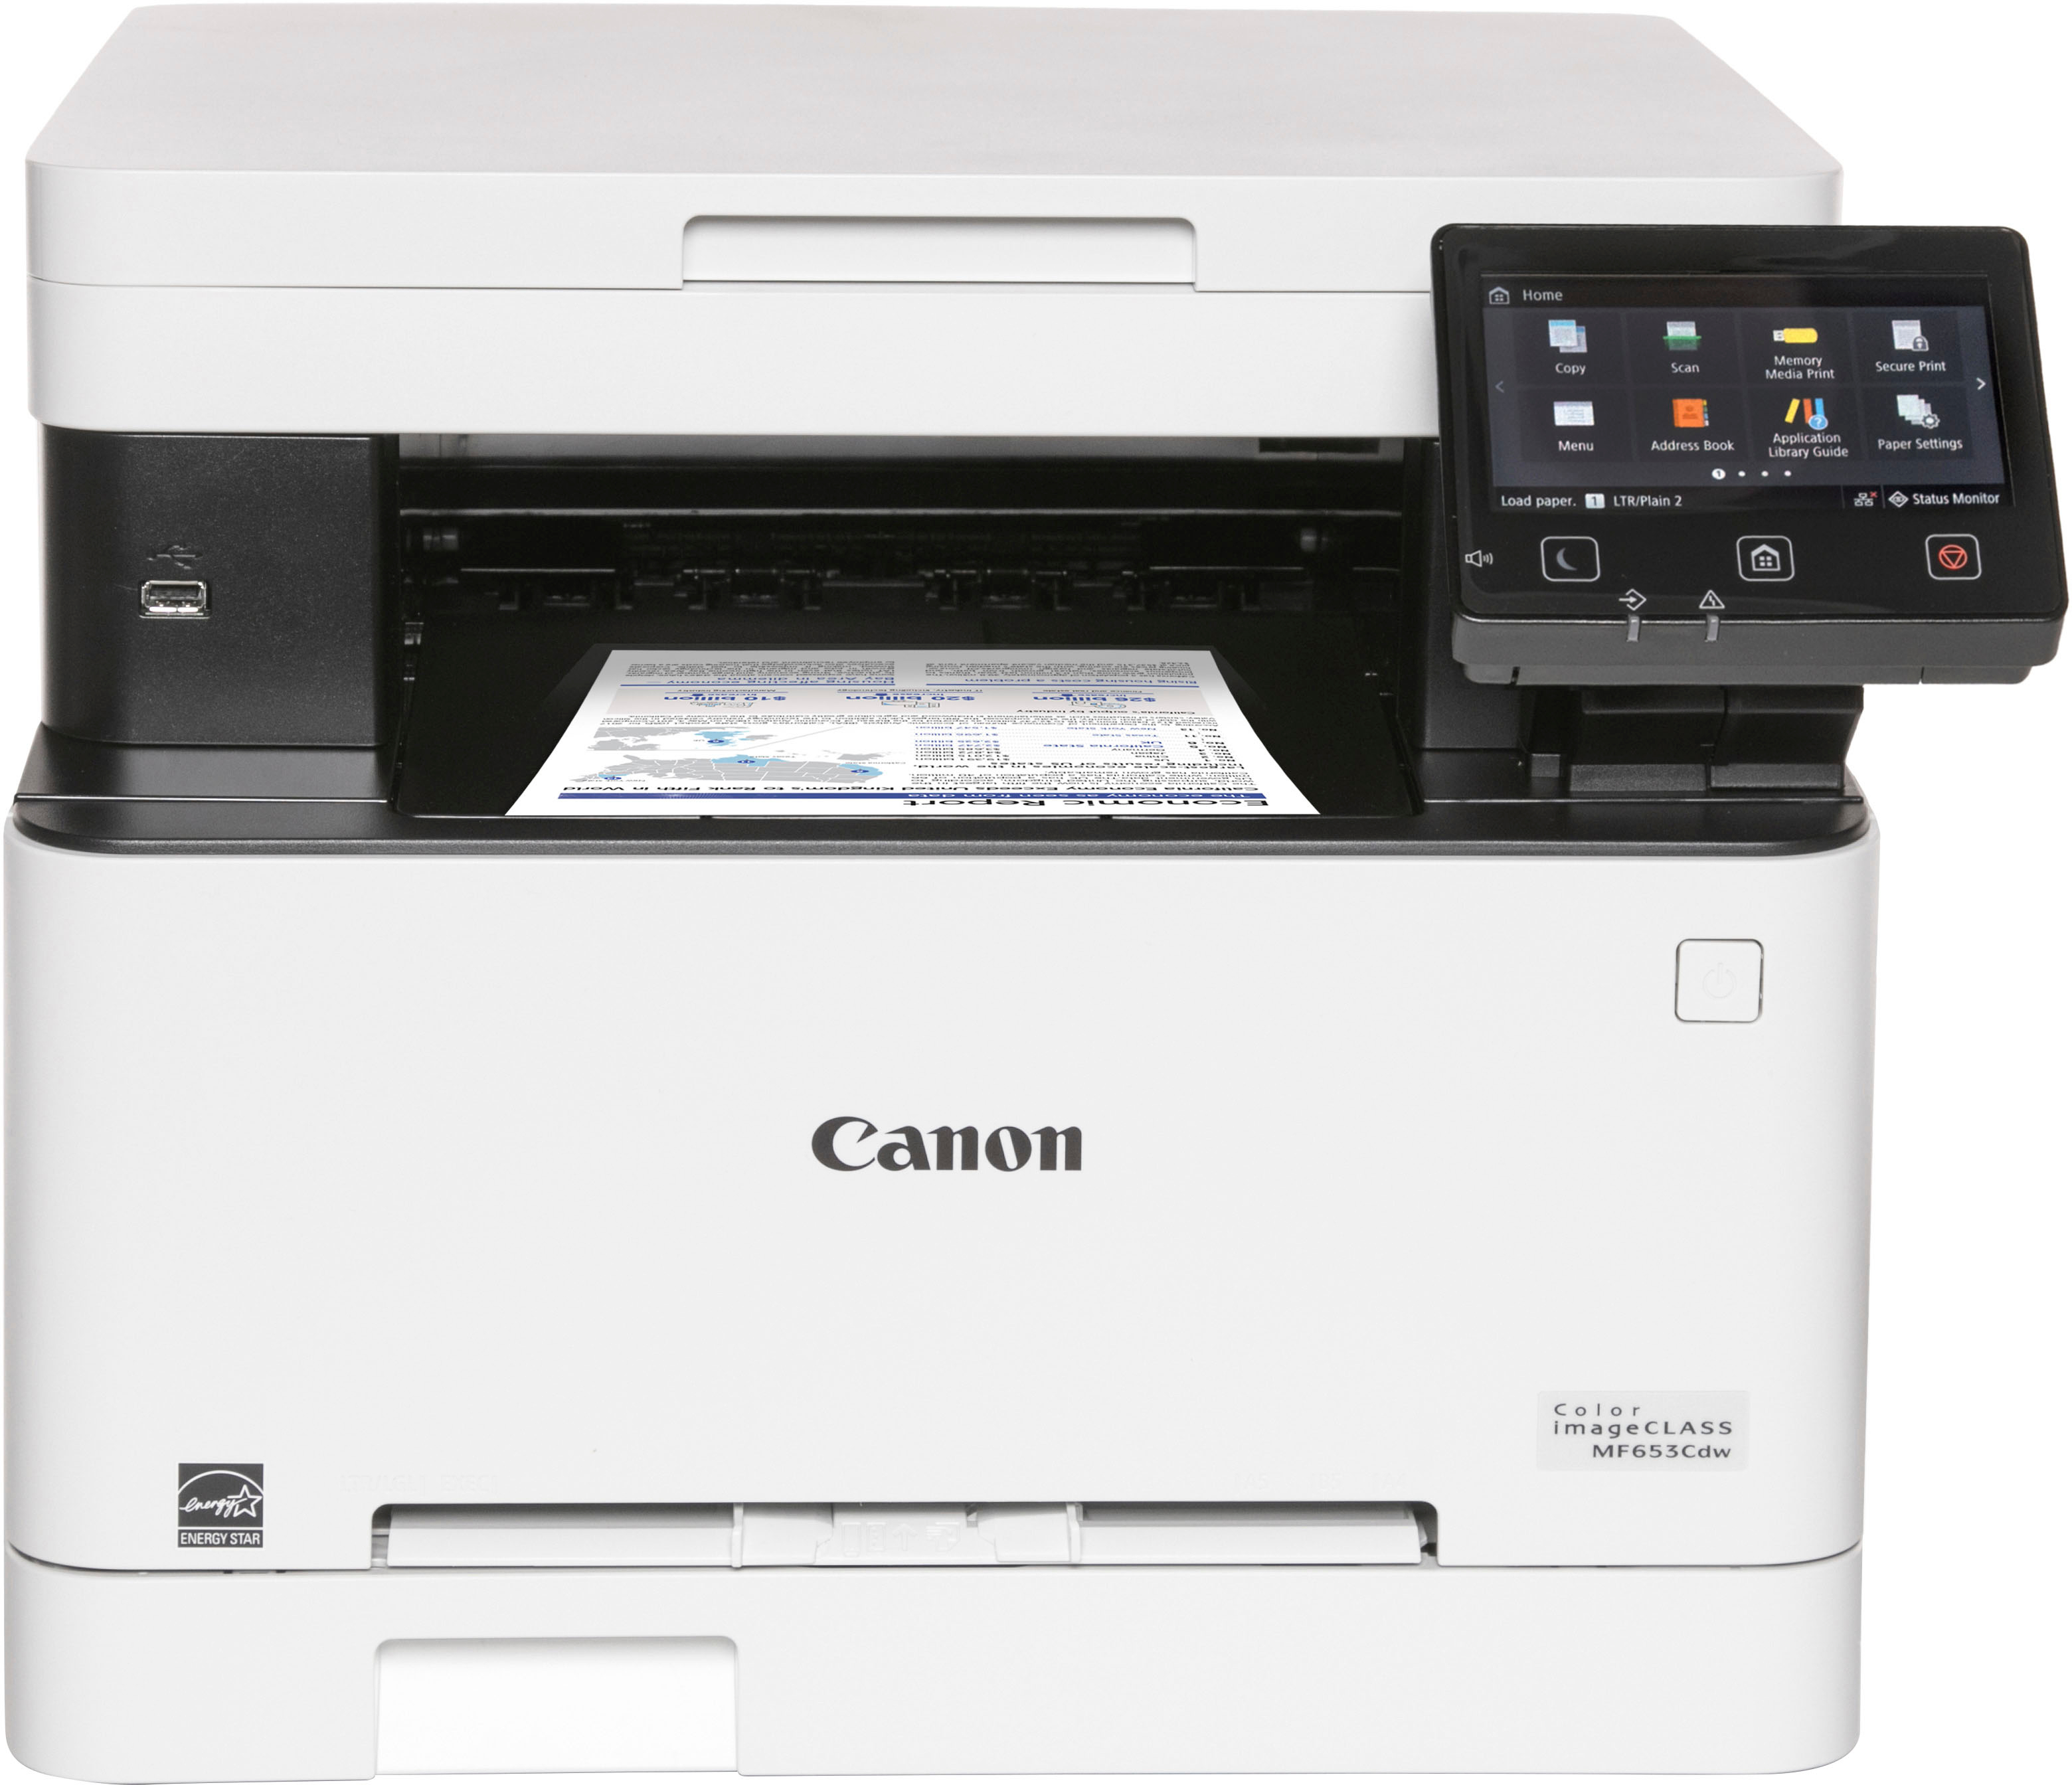 Canon i-SENSYS MF641Cw - imprimante laser multifonction couleur A4